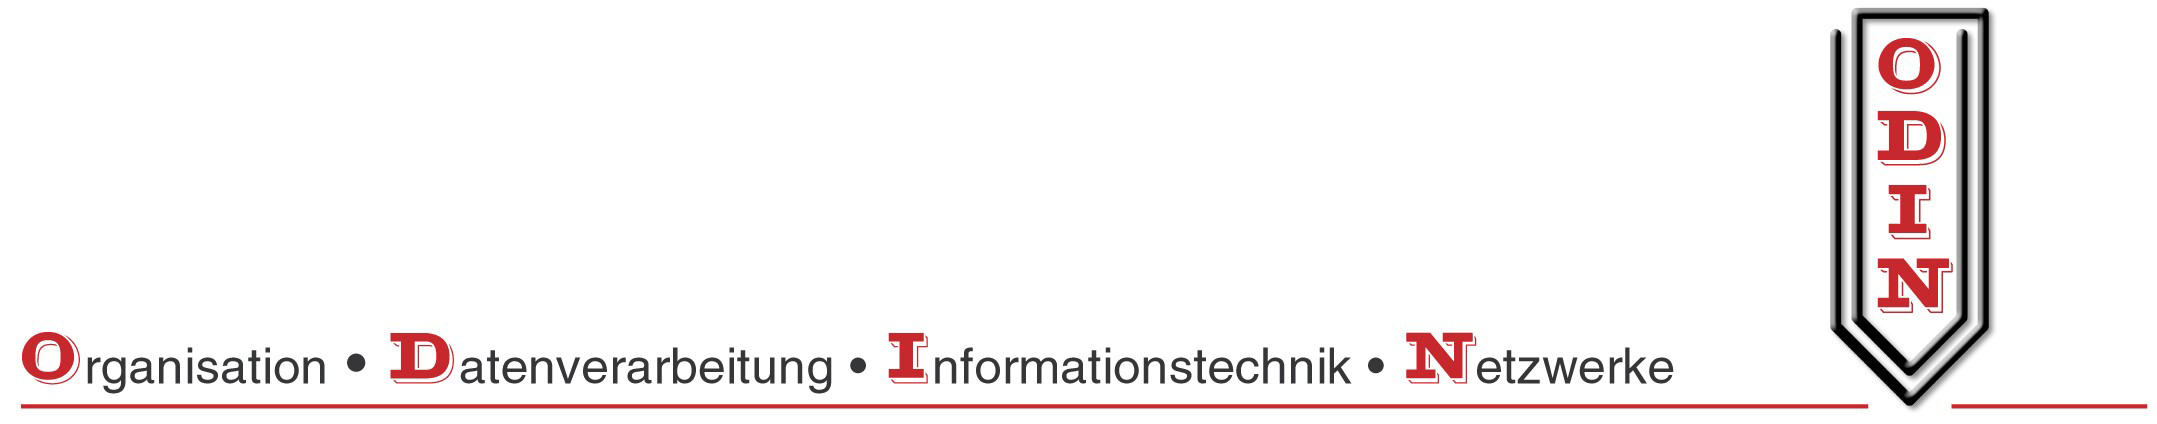 Tätigkeit der ODIN Softwareberatung GmbH